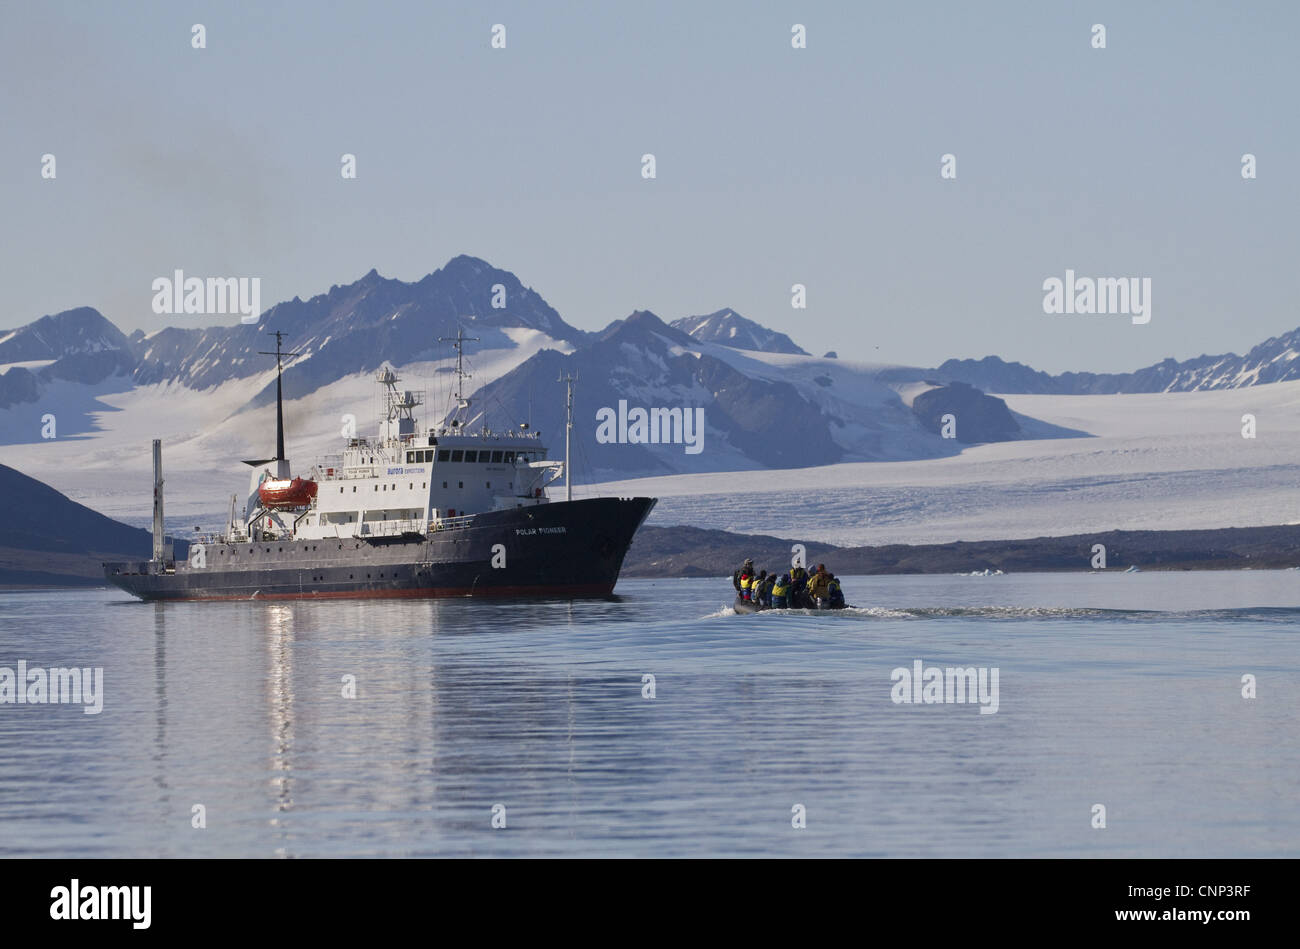 Zodiac barca gonfiabile con turisti avvicinando la nave di crociera, con ghiacciaio in background, Spitzbergen, Svalbard, luglio Foto Stock